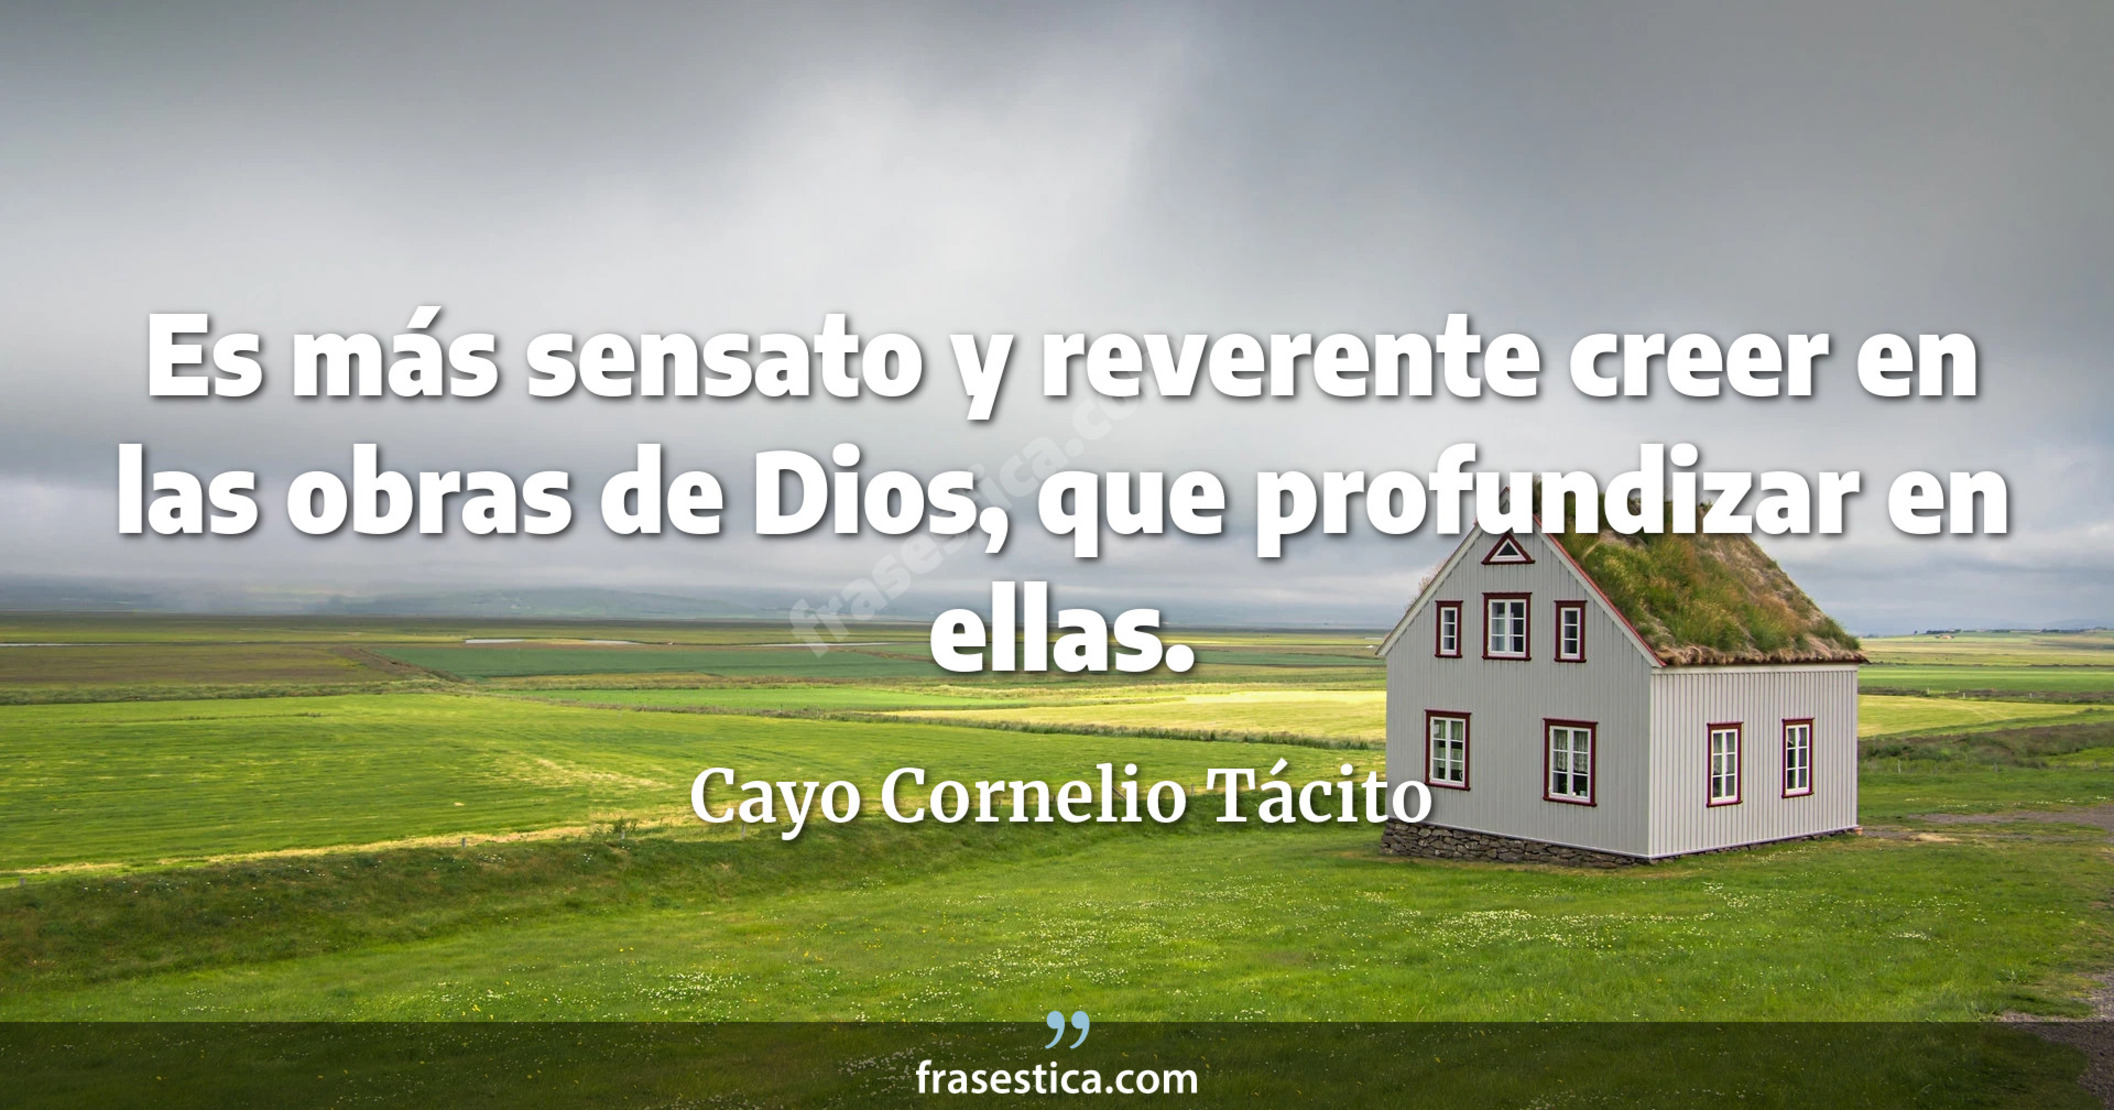 Es más sensato y reverente creer en las obras de Dios, que profundizar en ellas. - Cayo Cornelio Tácito